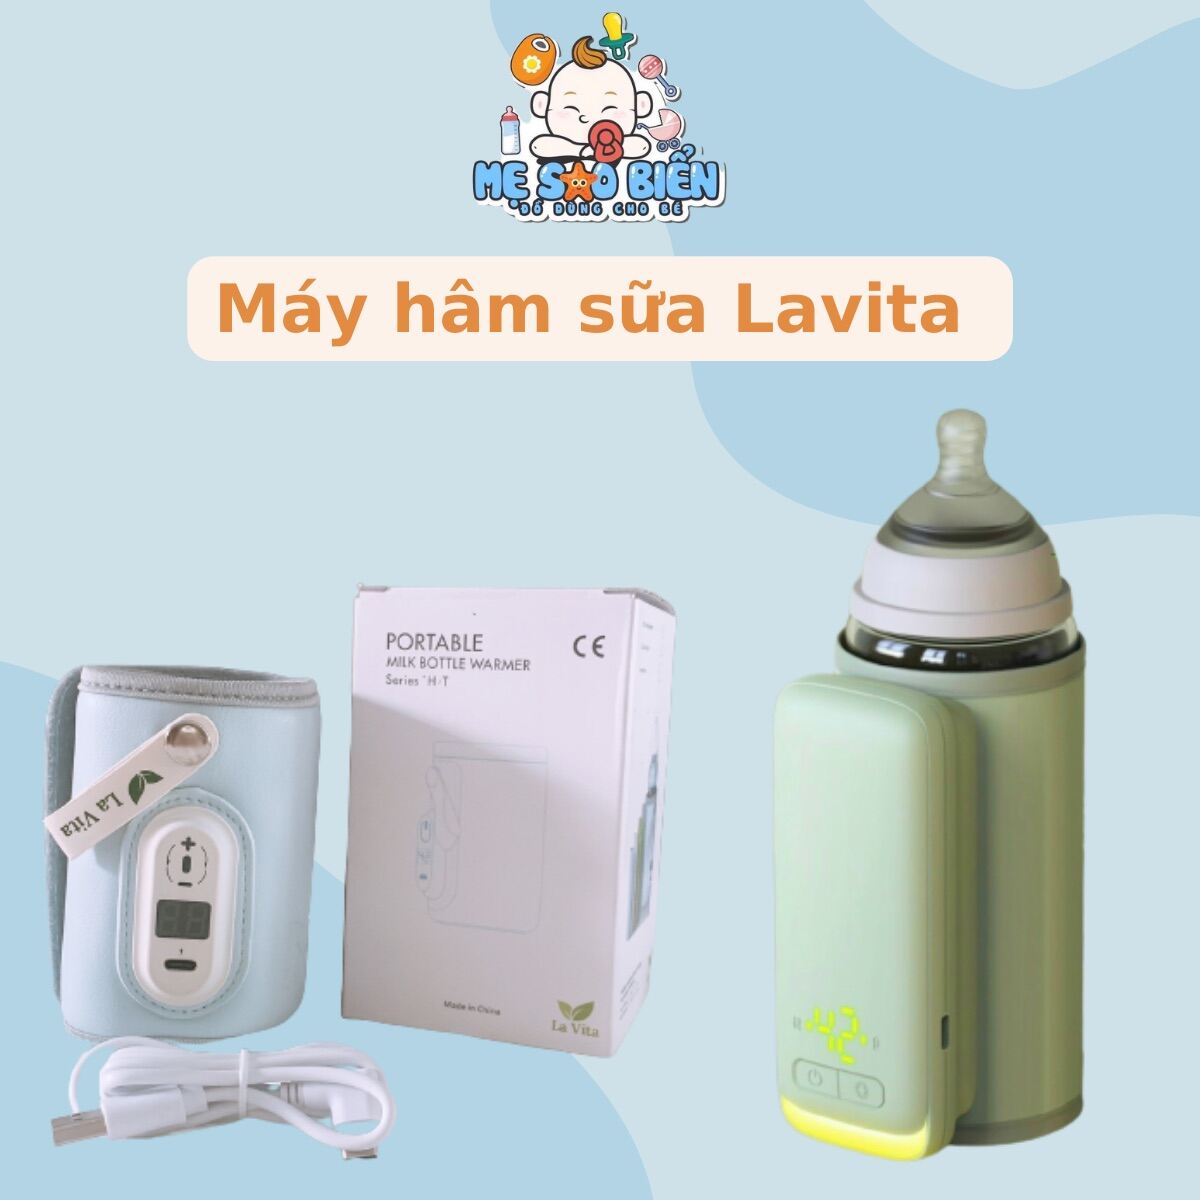 Máy ủ bình sữa di động thông minh La Vita Máy hâm sữa tích điện Lavita